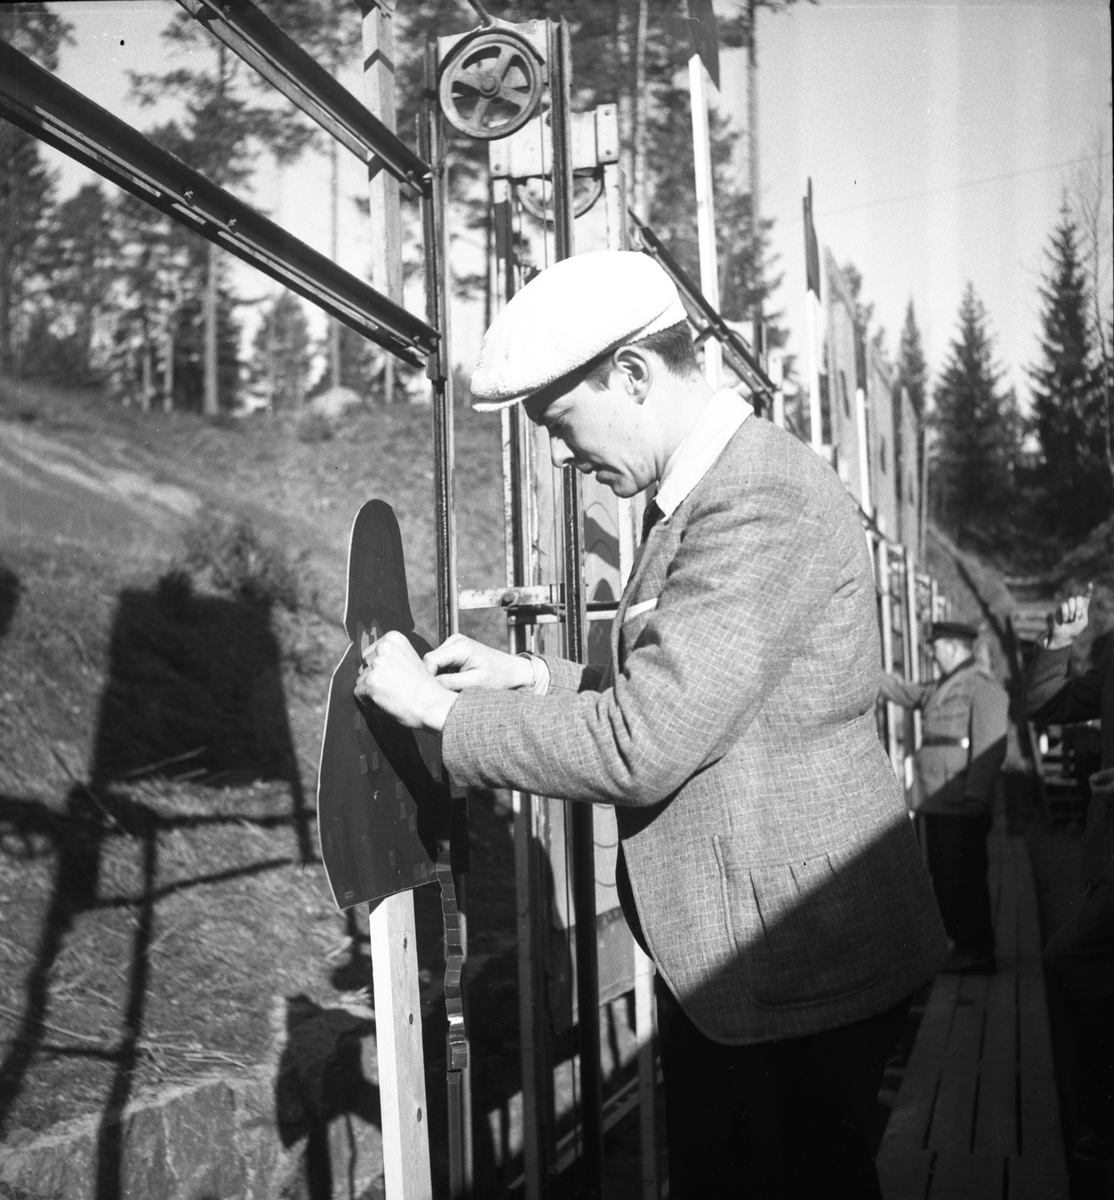 Kooprationsfältskytte

Arrangerat av Aftonbladet och skarpskytteföreningen. 1943